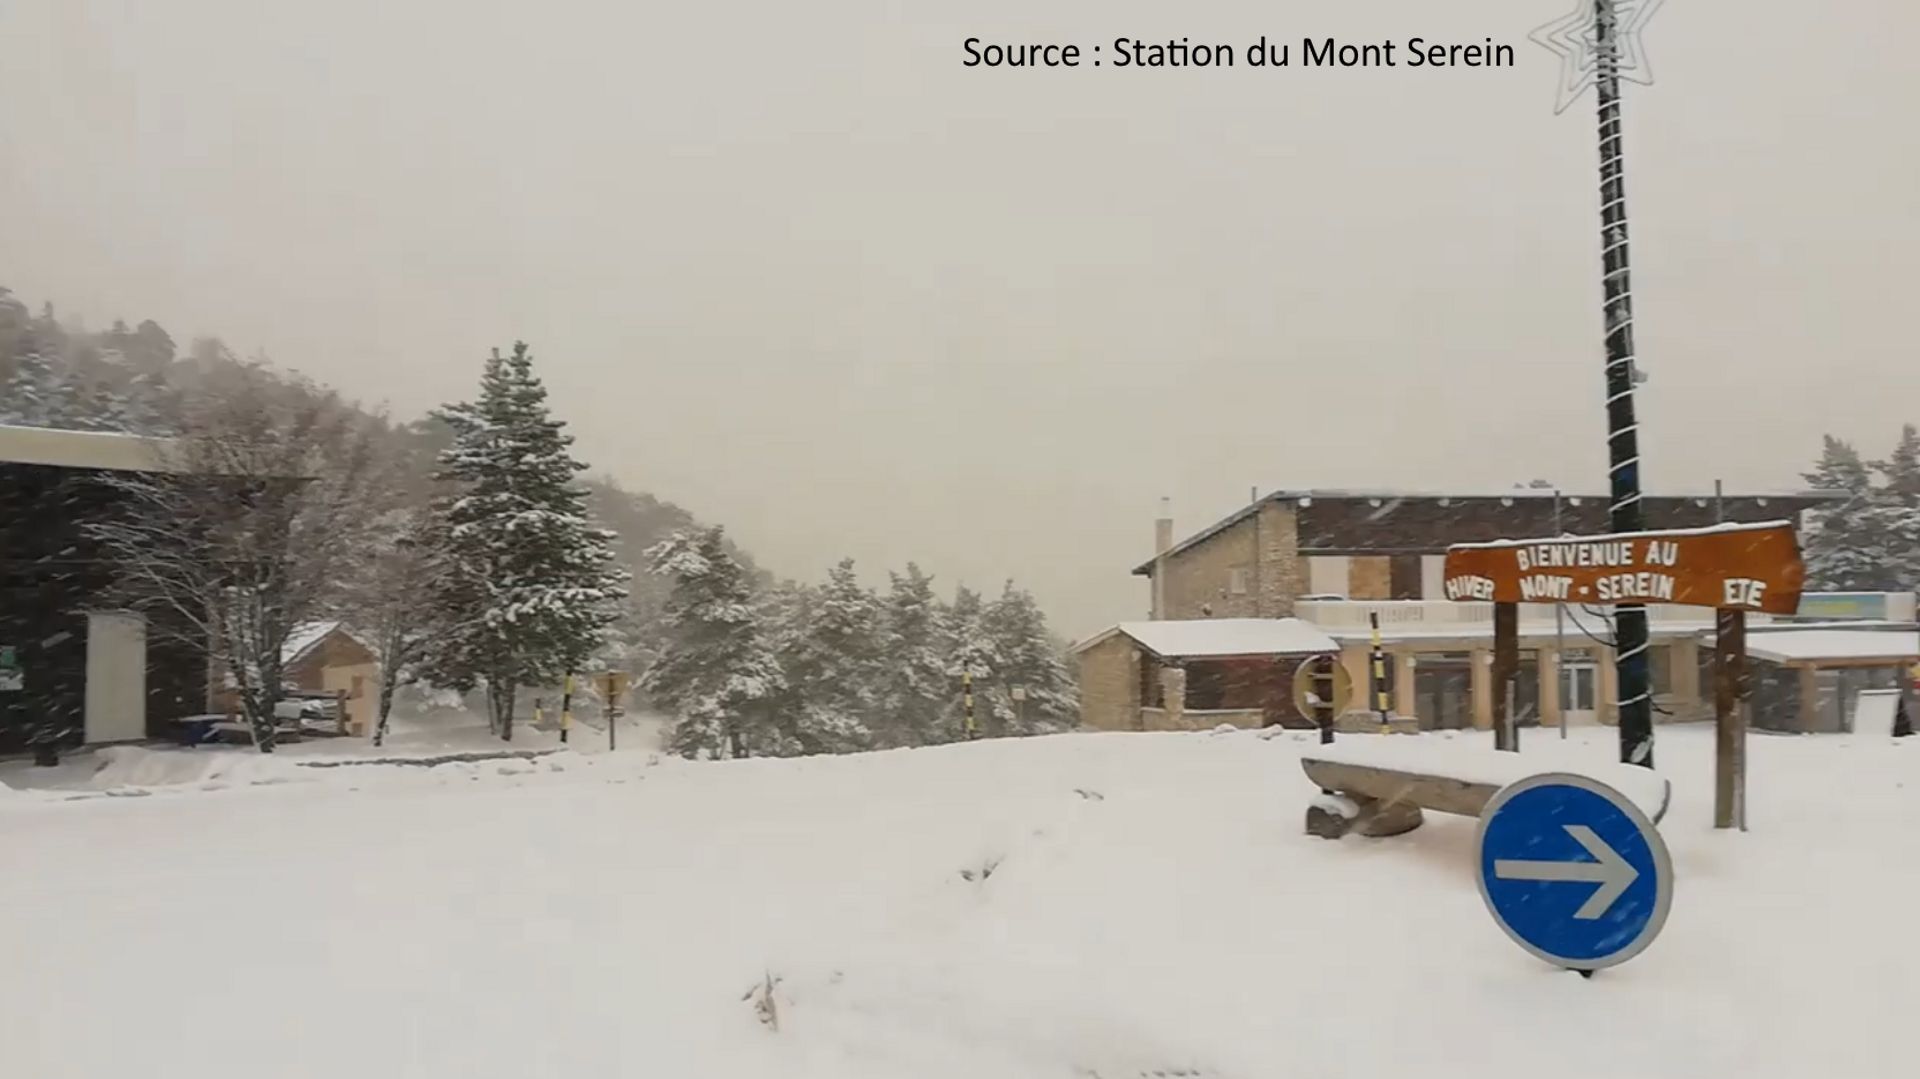 La neige recouvre la station du Mont Serein, inaccessible aux skieurs en raison de l’épidémie de coronavirus.